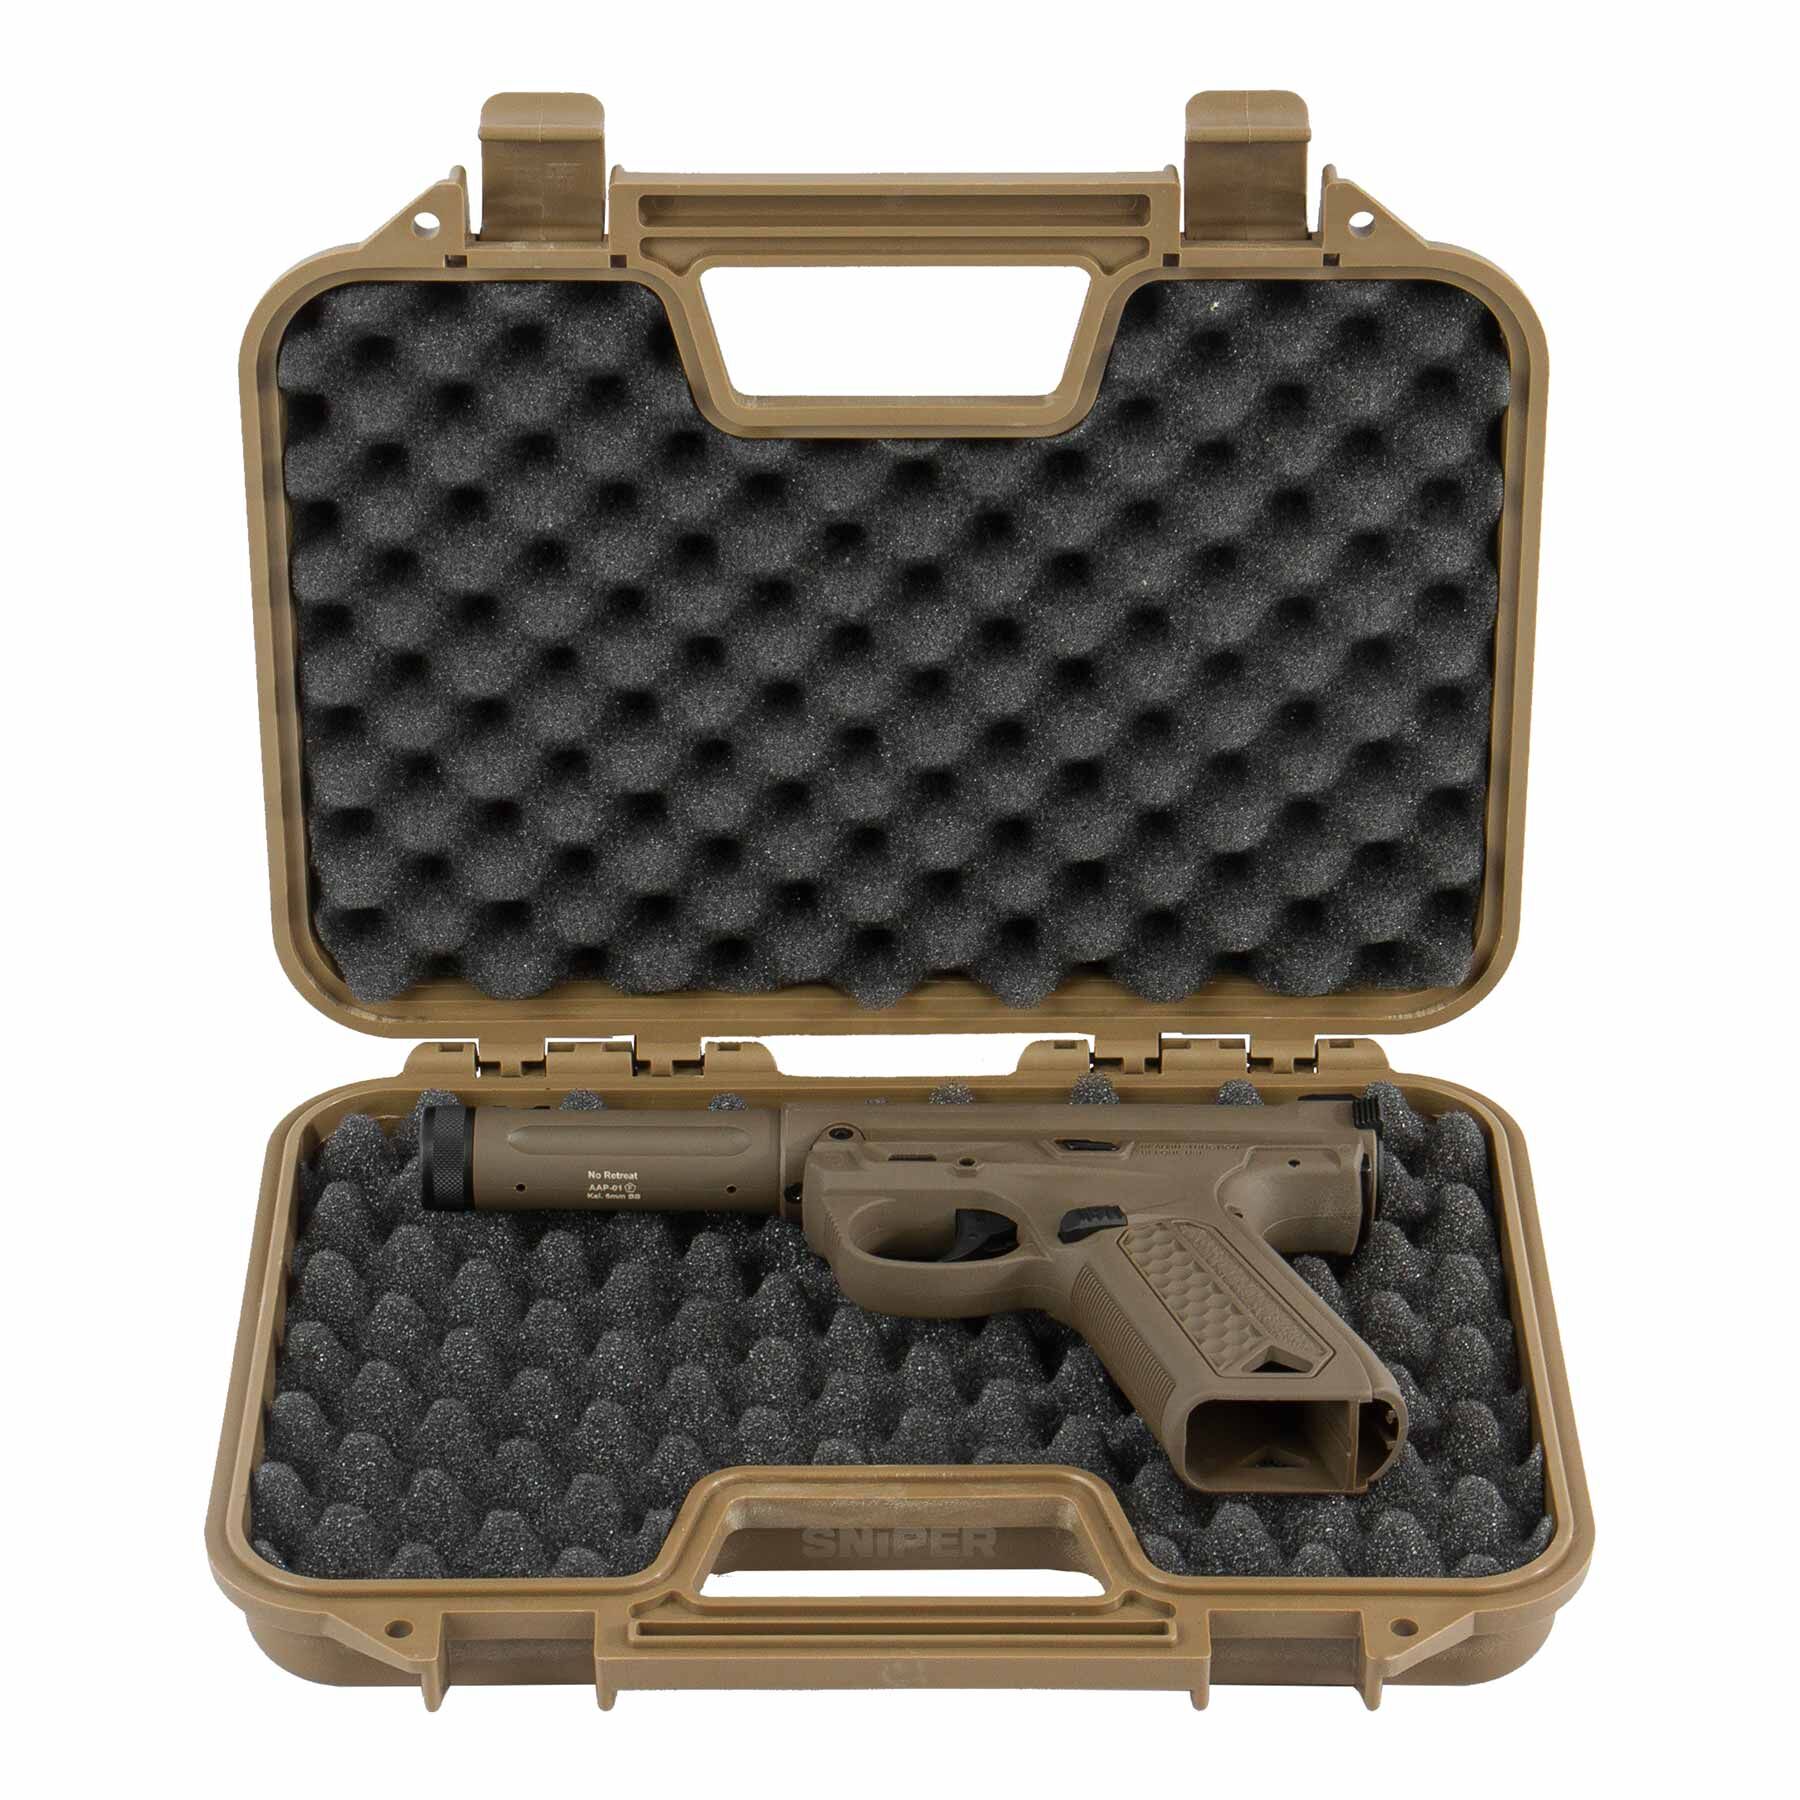 Reapo Pistolen Koffer 30x19 cm, black, Waffenkoffer, Waffenkoffer, MILITÄRAUSRÜSTUNG